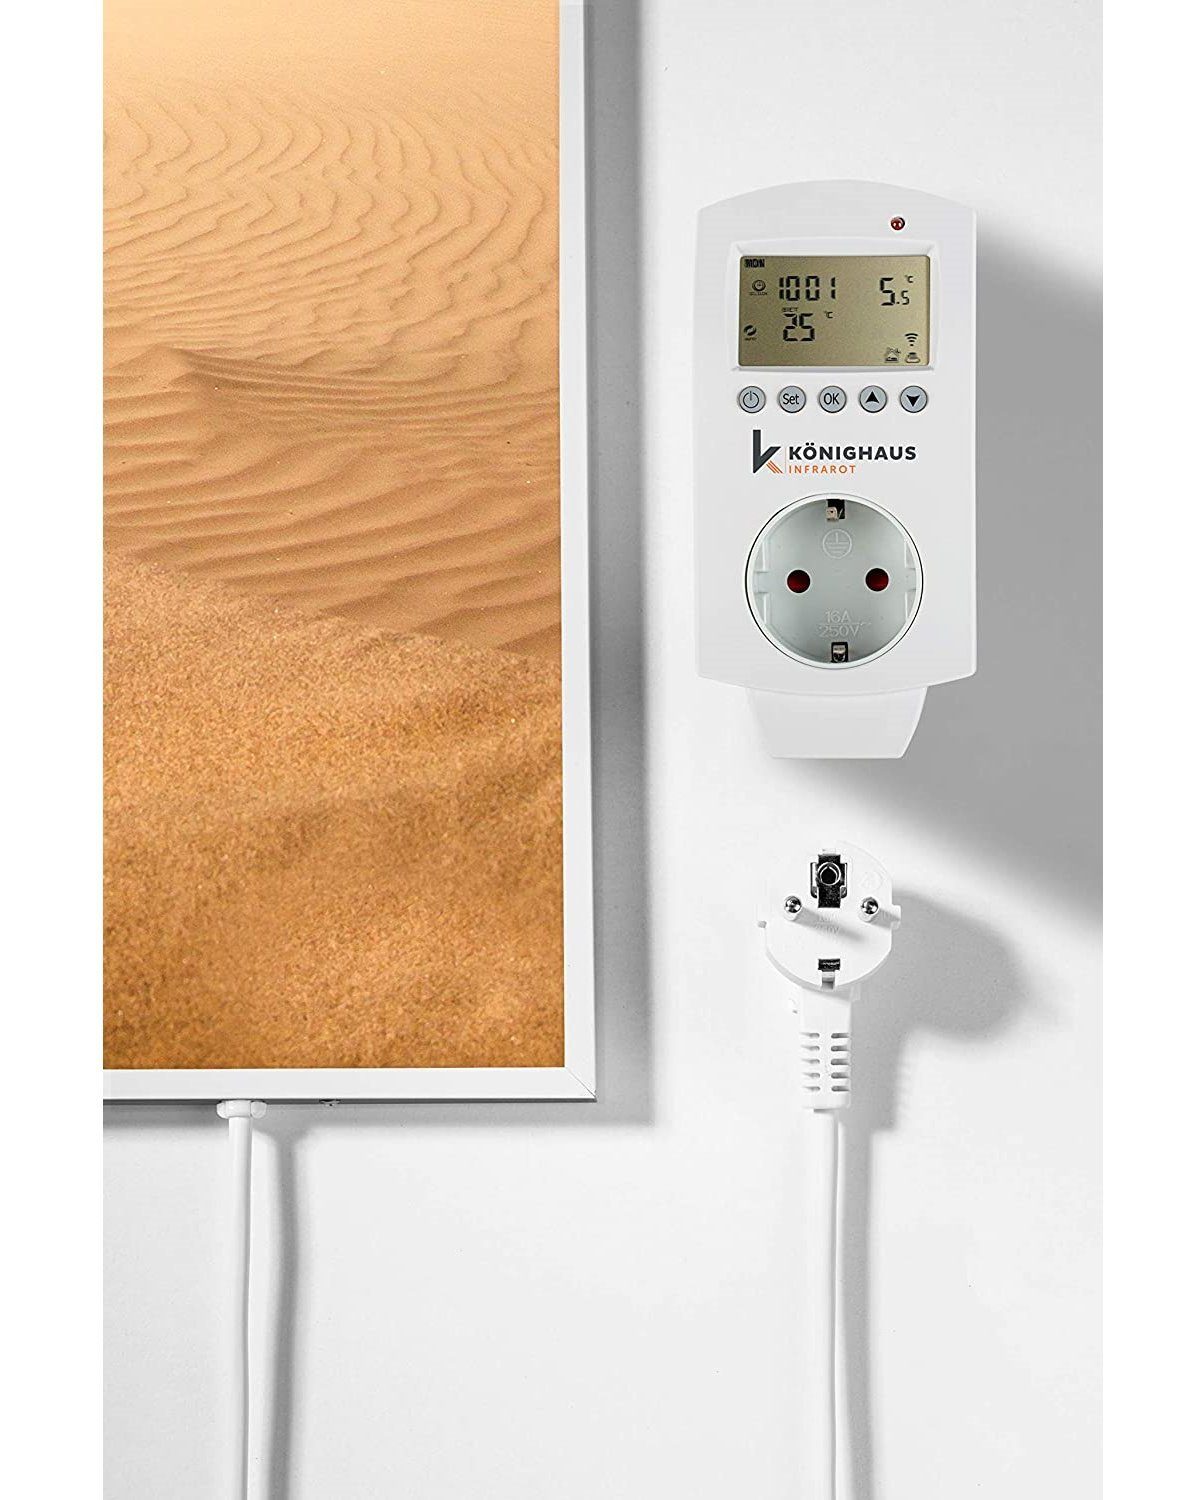 Könighaus Infrarotheizung Smart, 1000W Germany, Made in Wüste angenehme Bild-Serie Smart Strahlungswärme, Home